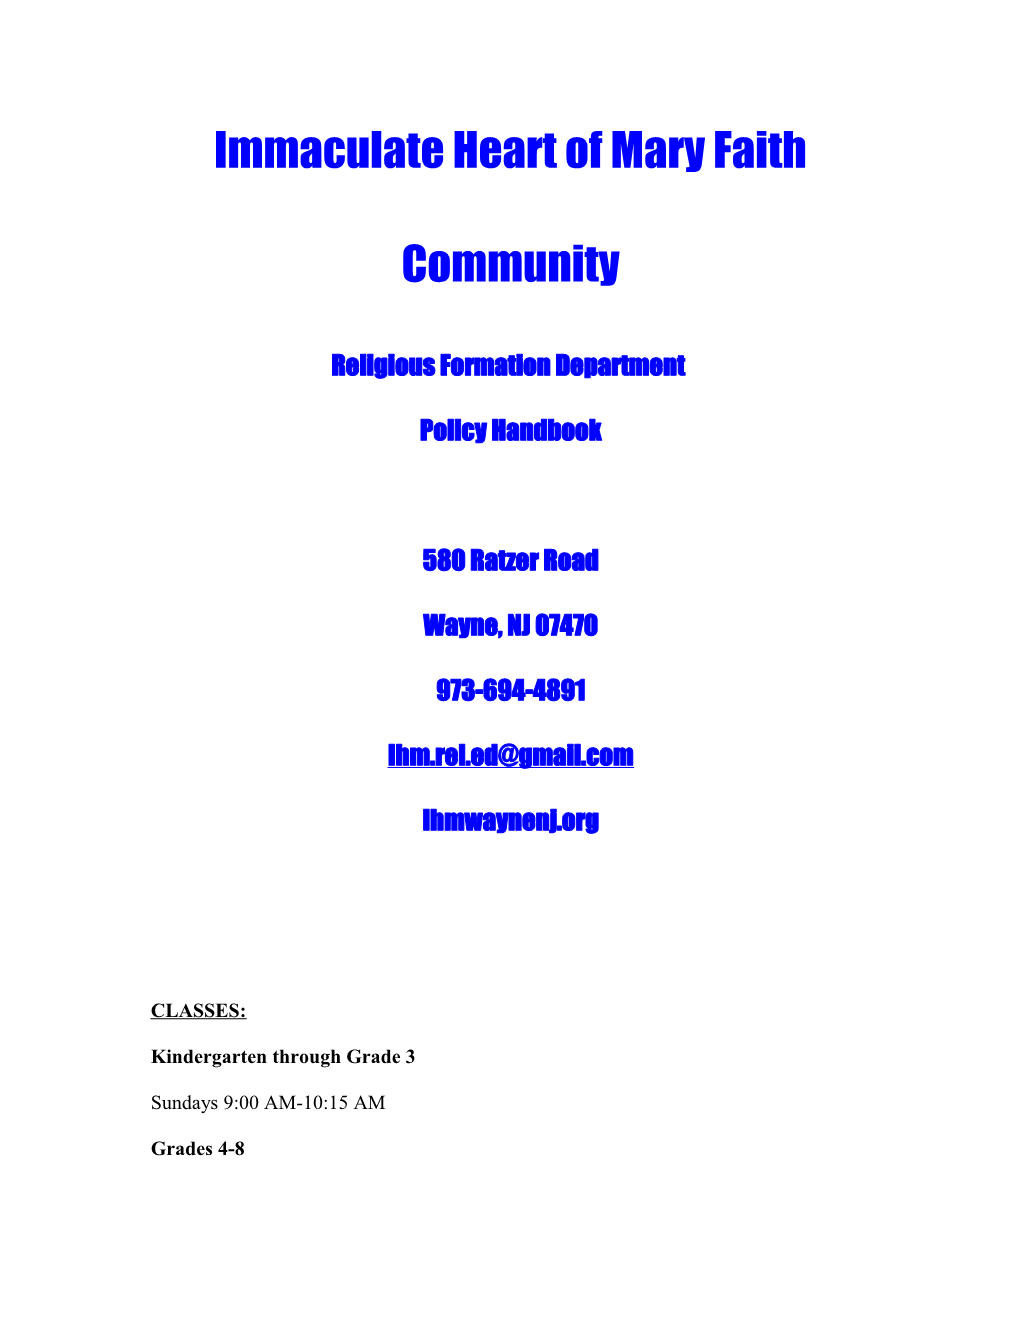 Immaculate Heart of Mary Faith Community